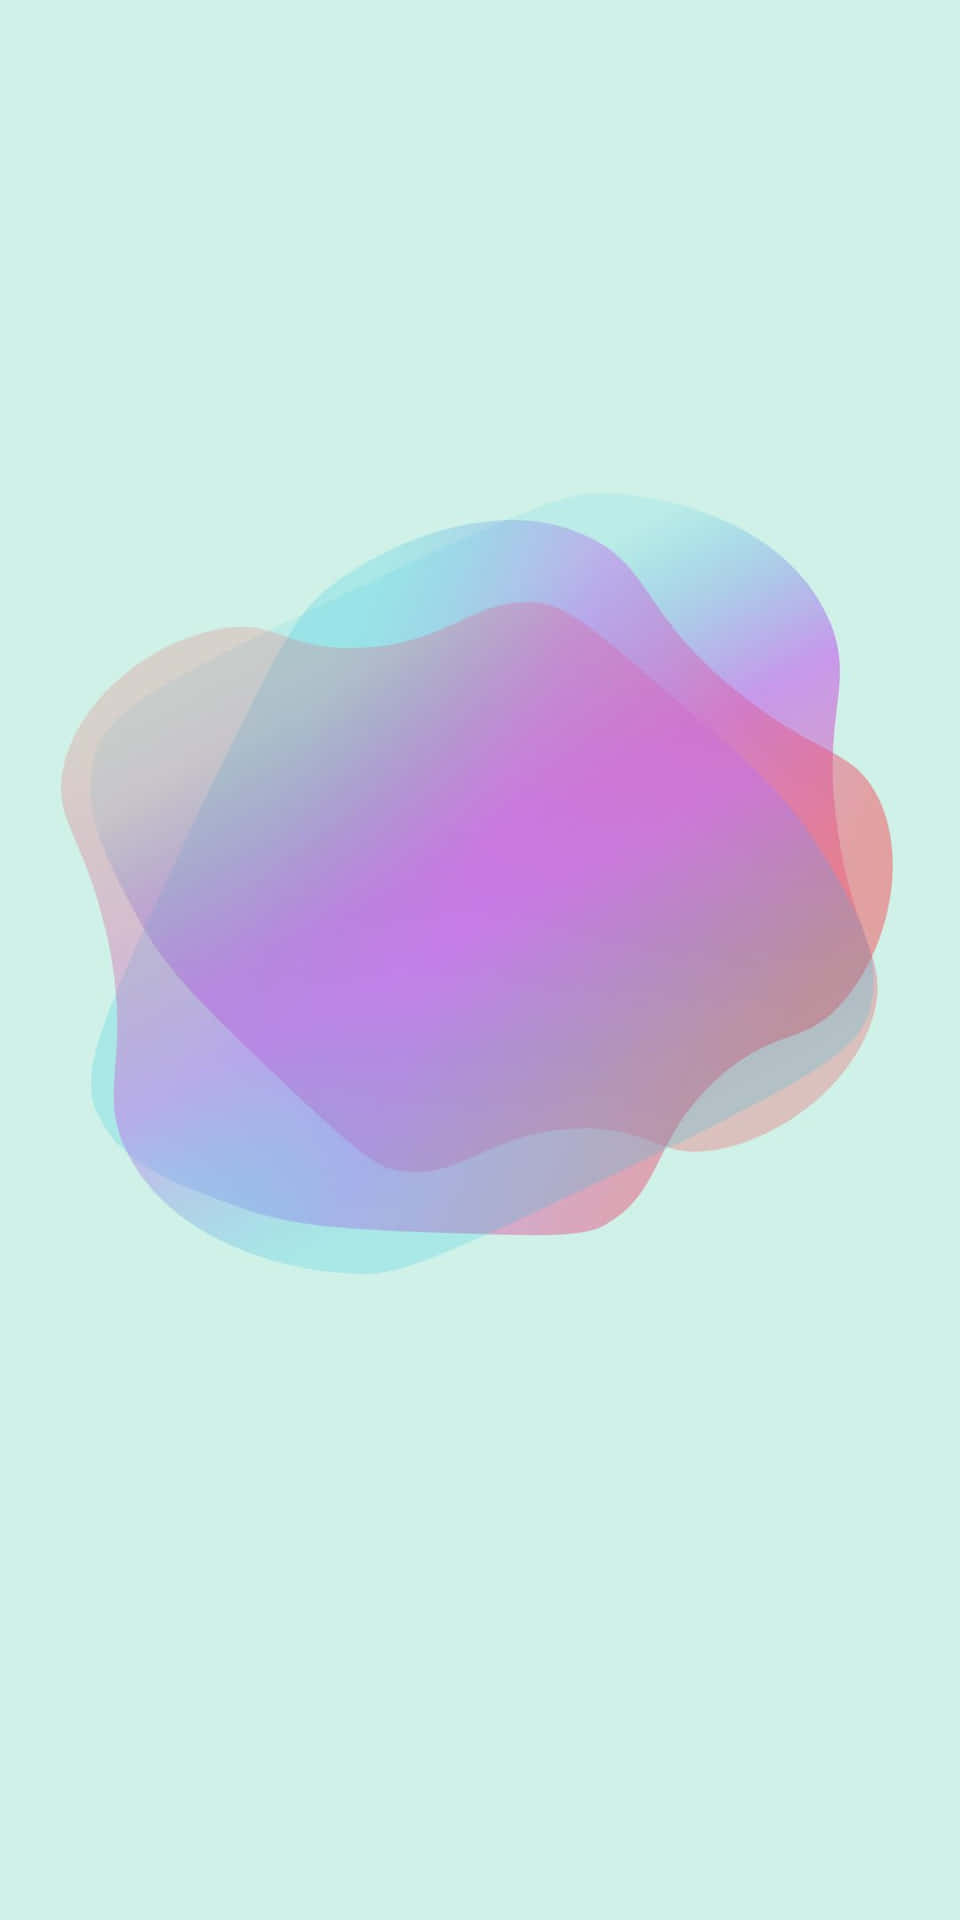 Fondode Pantalla Del Pixel 3 Con Superposición De Degradado Rosa Y Azul.